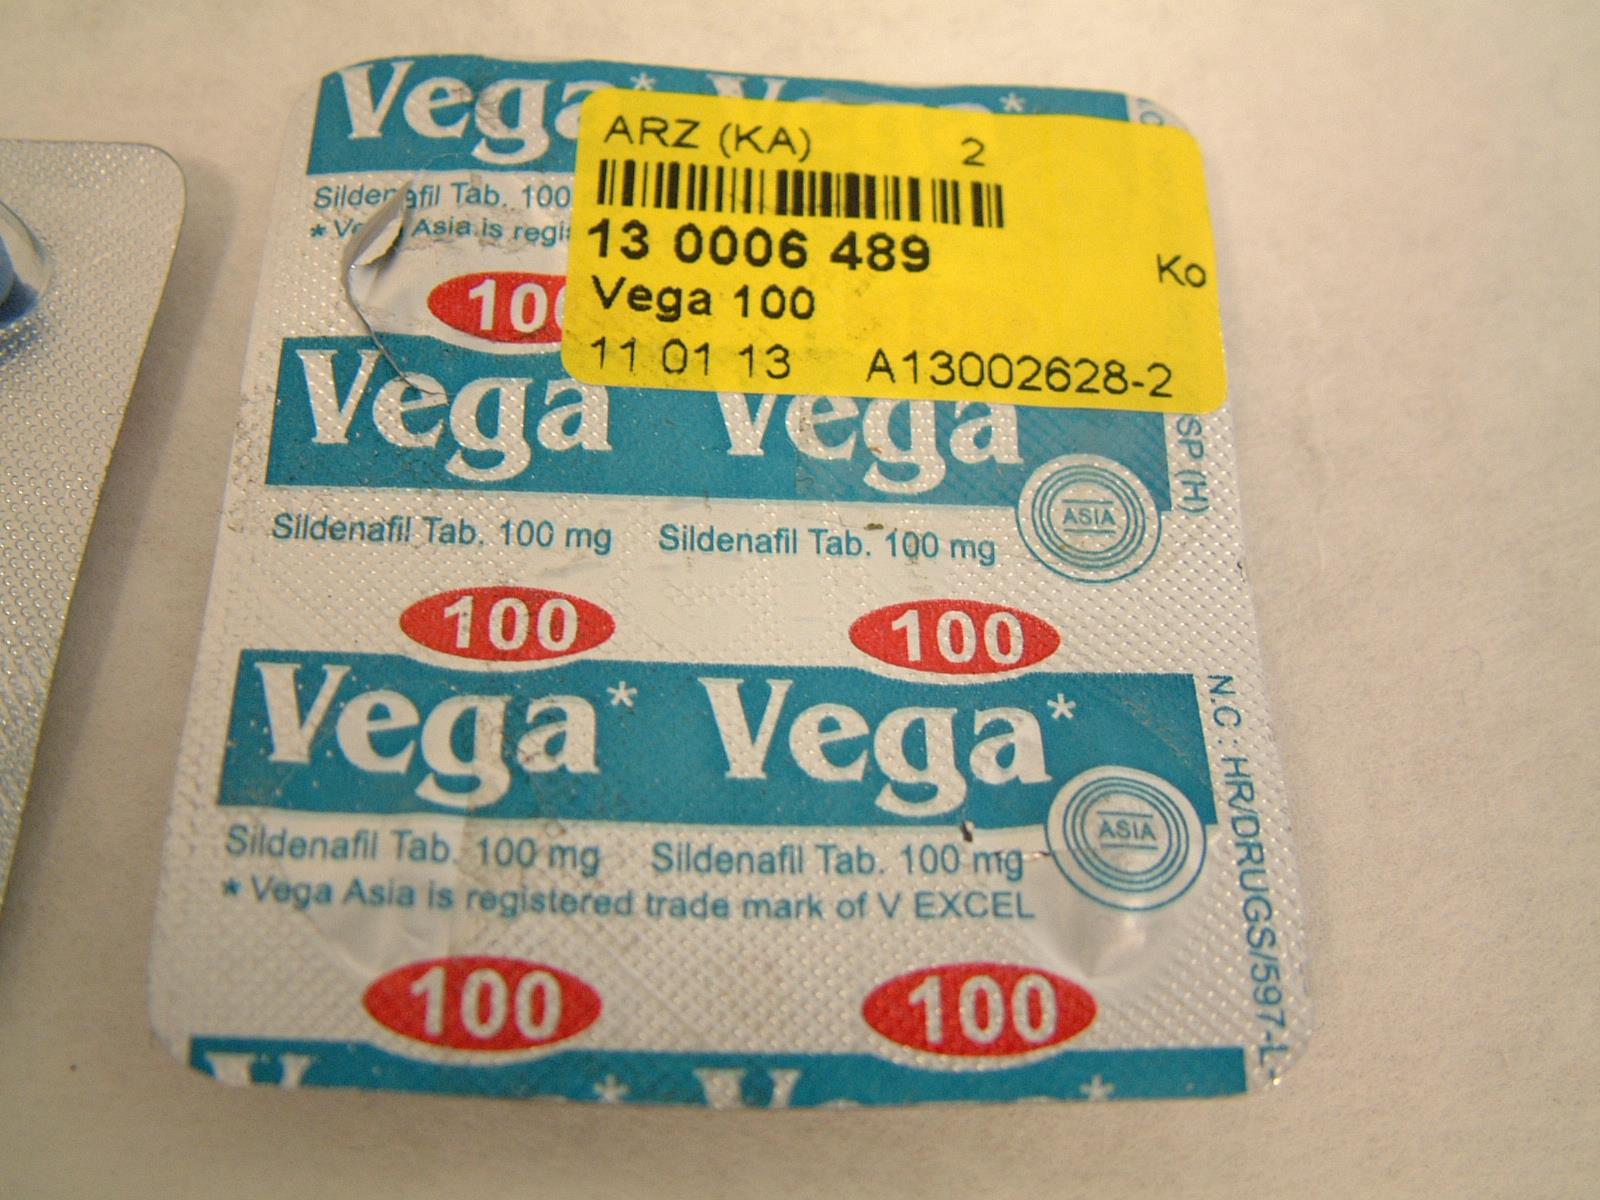 Billede af det ulovlige produkt: Vega 100